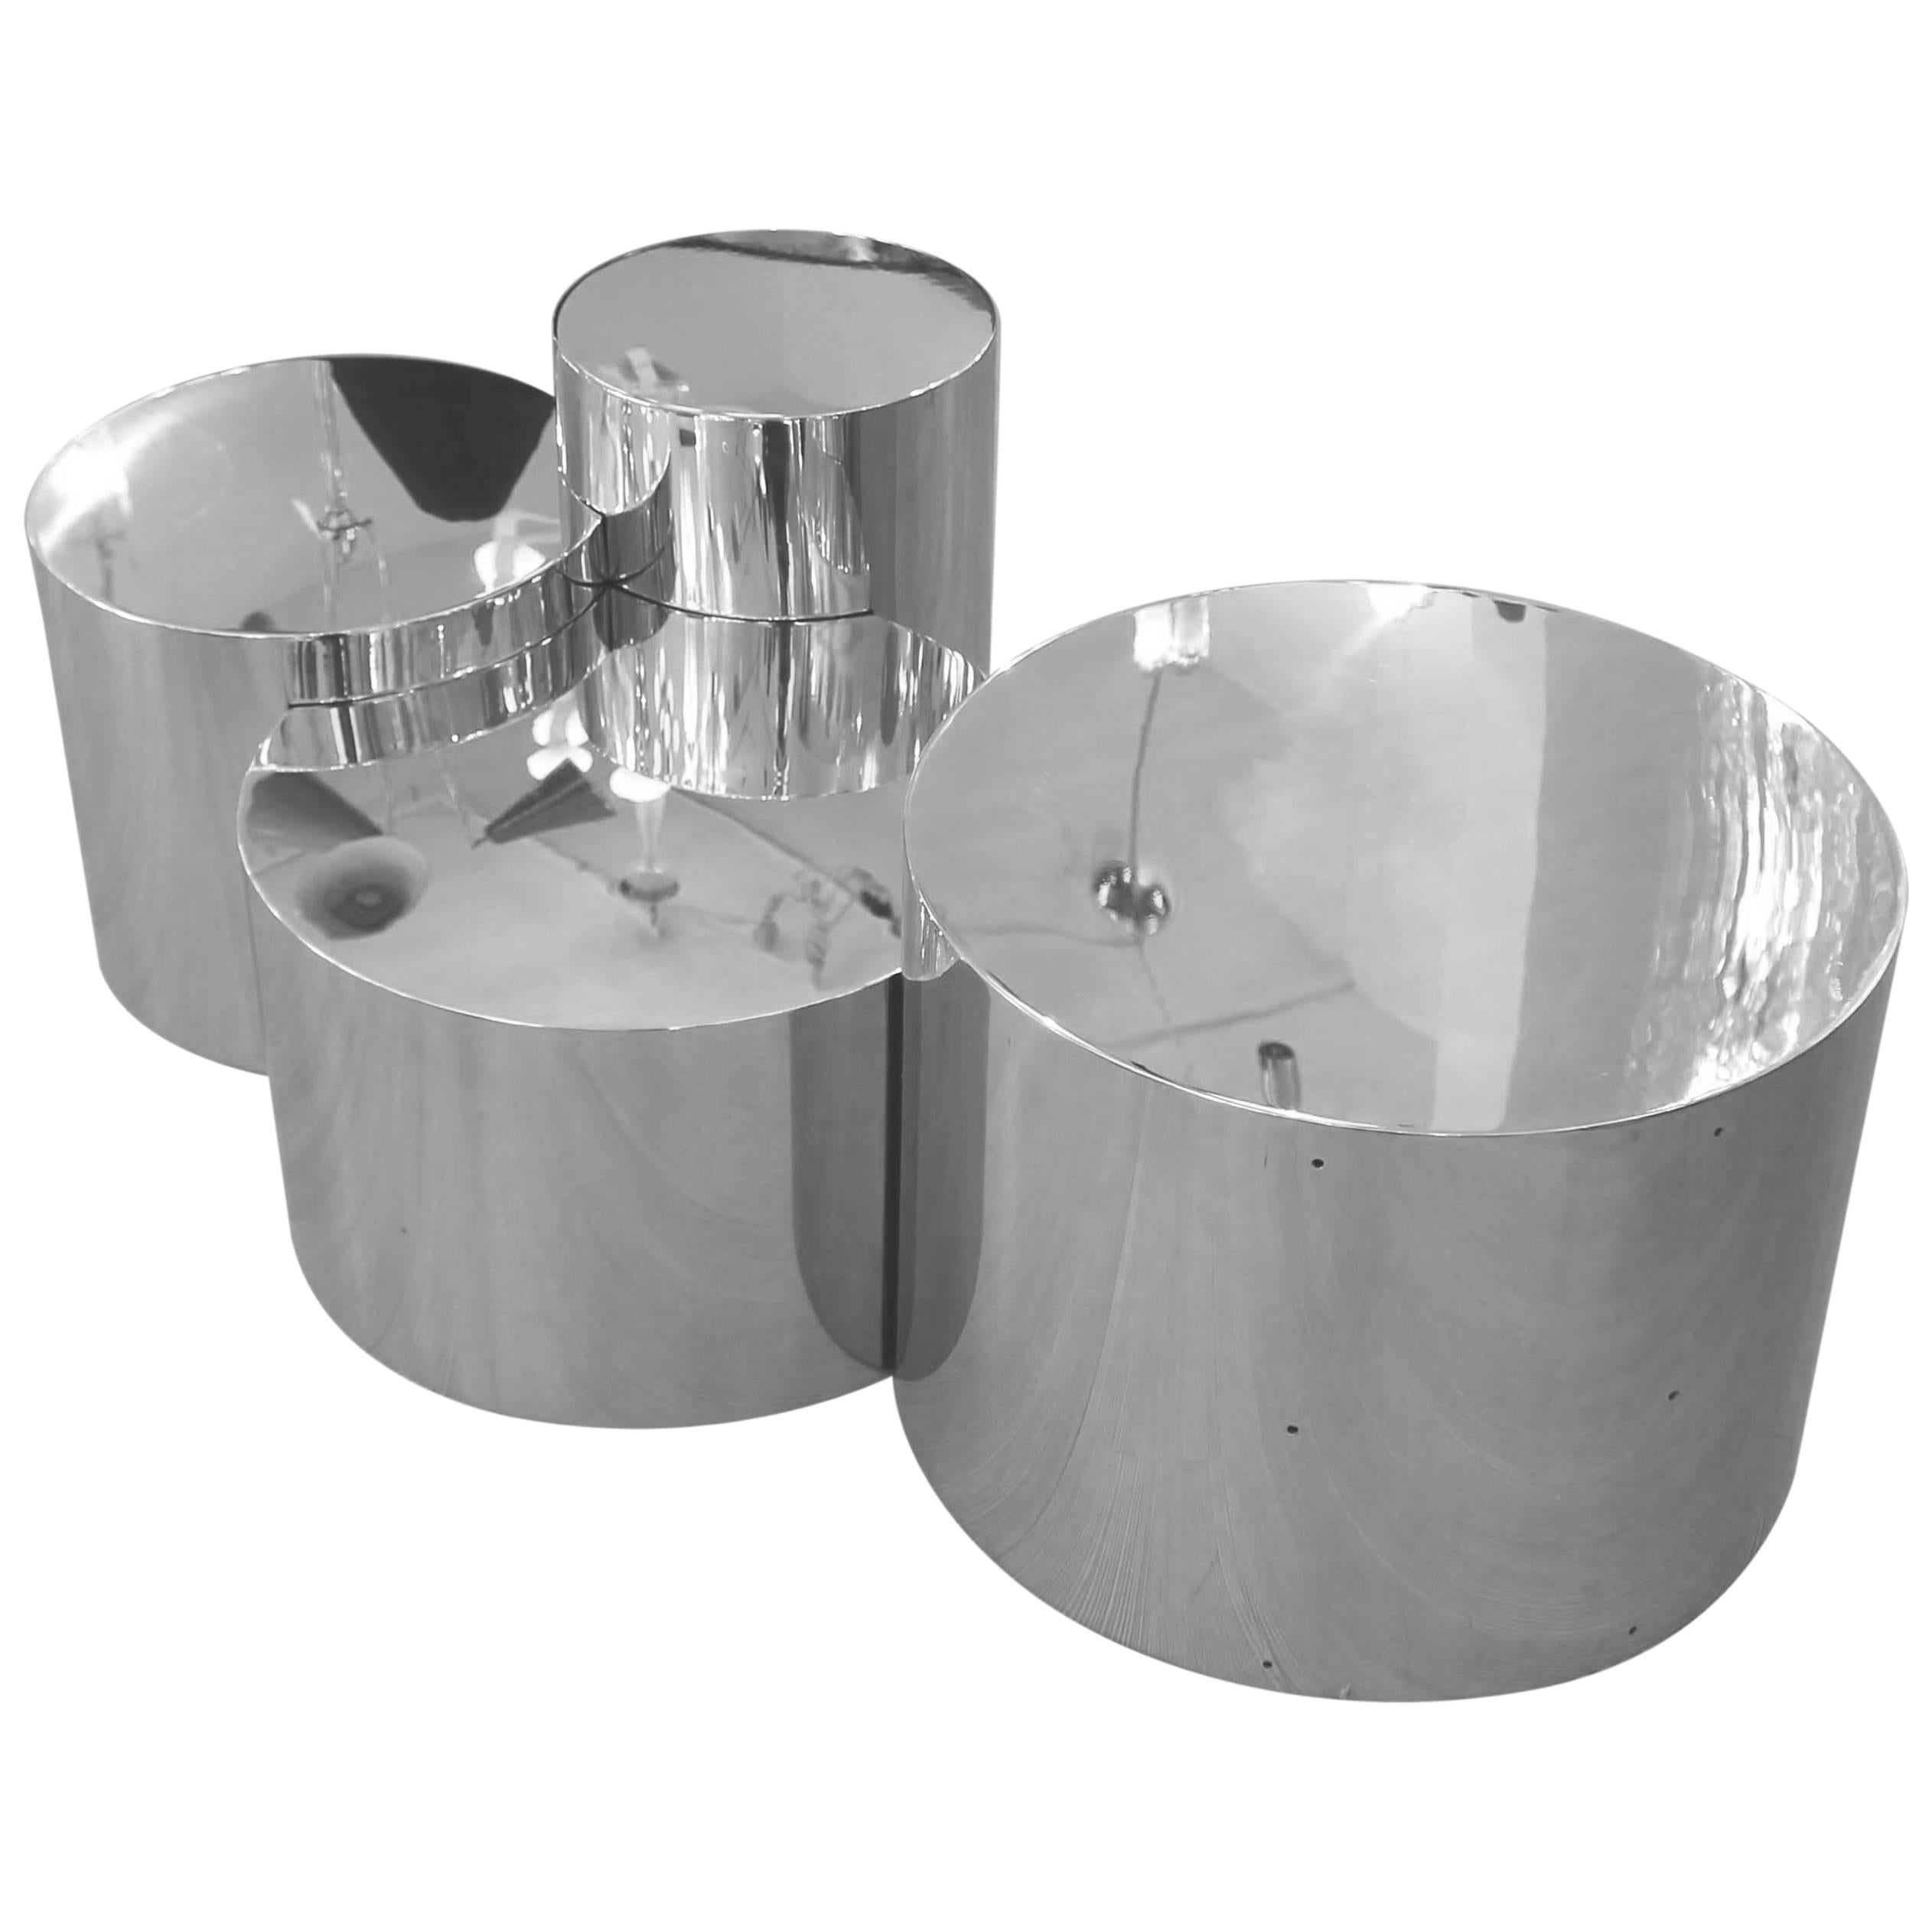 Der Tisch Geometria: Cerchi #4 hebt die minimalistische Form des Zylinders hervor, indem er sie miteinander verbindet und überlappt, um ein sehr skulpturales Stück zu schaffen. Abgebildet in poliertem Stahl mit vier Zylindern.

Anpassungsoptionen: